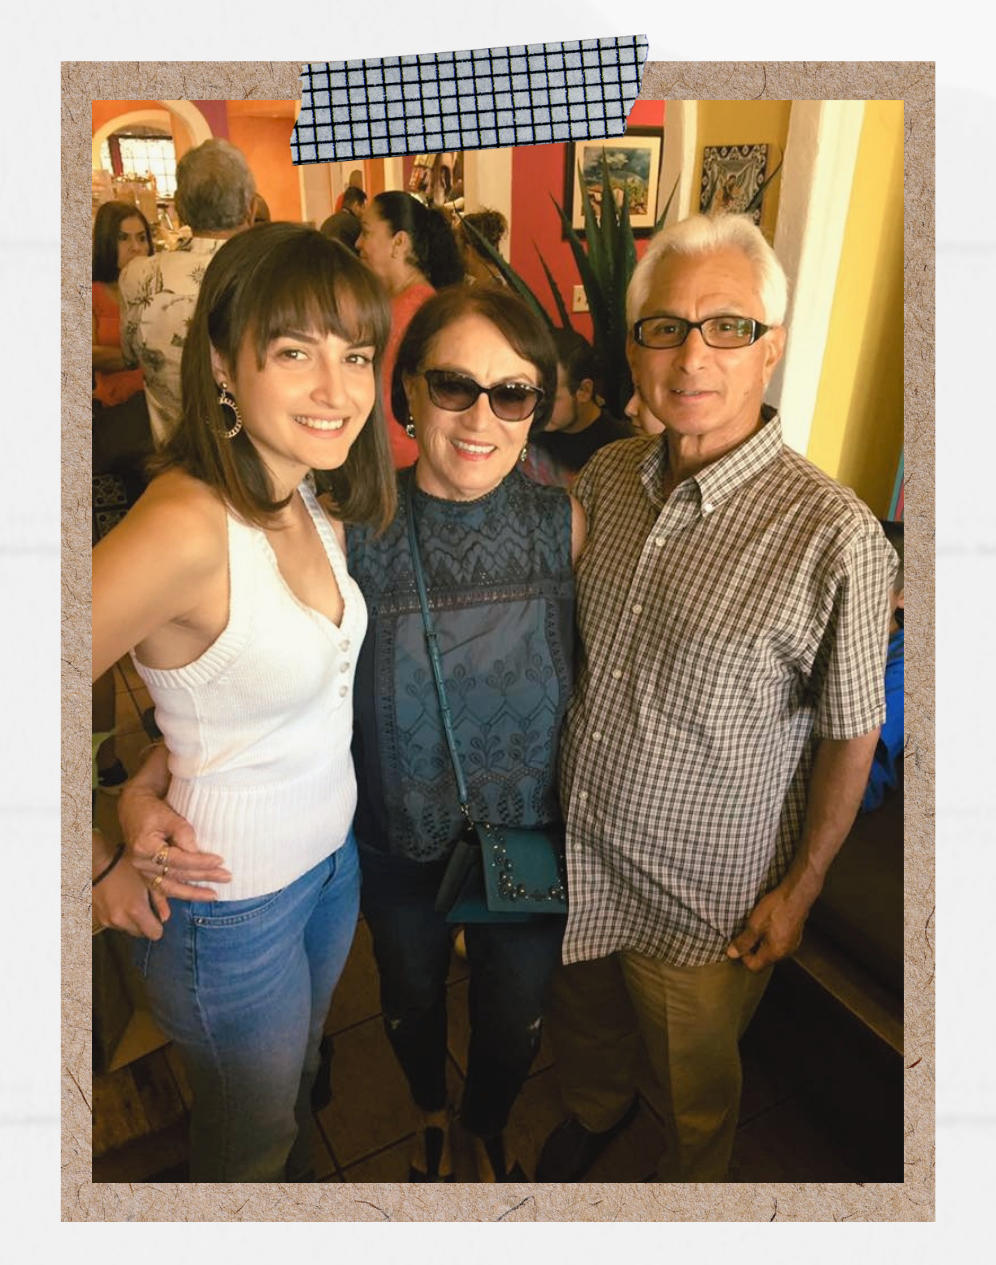 Reza Cristián Moreno está en la fotografía con sus abuelos, Judy Ghaffari y John Trujillo, quienes han sido un apoyo integral en su camino hacia la salud mental.